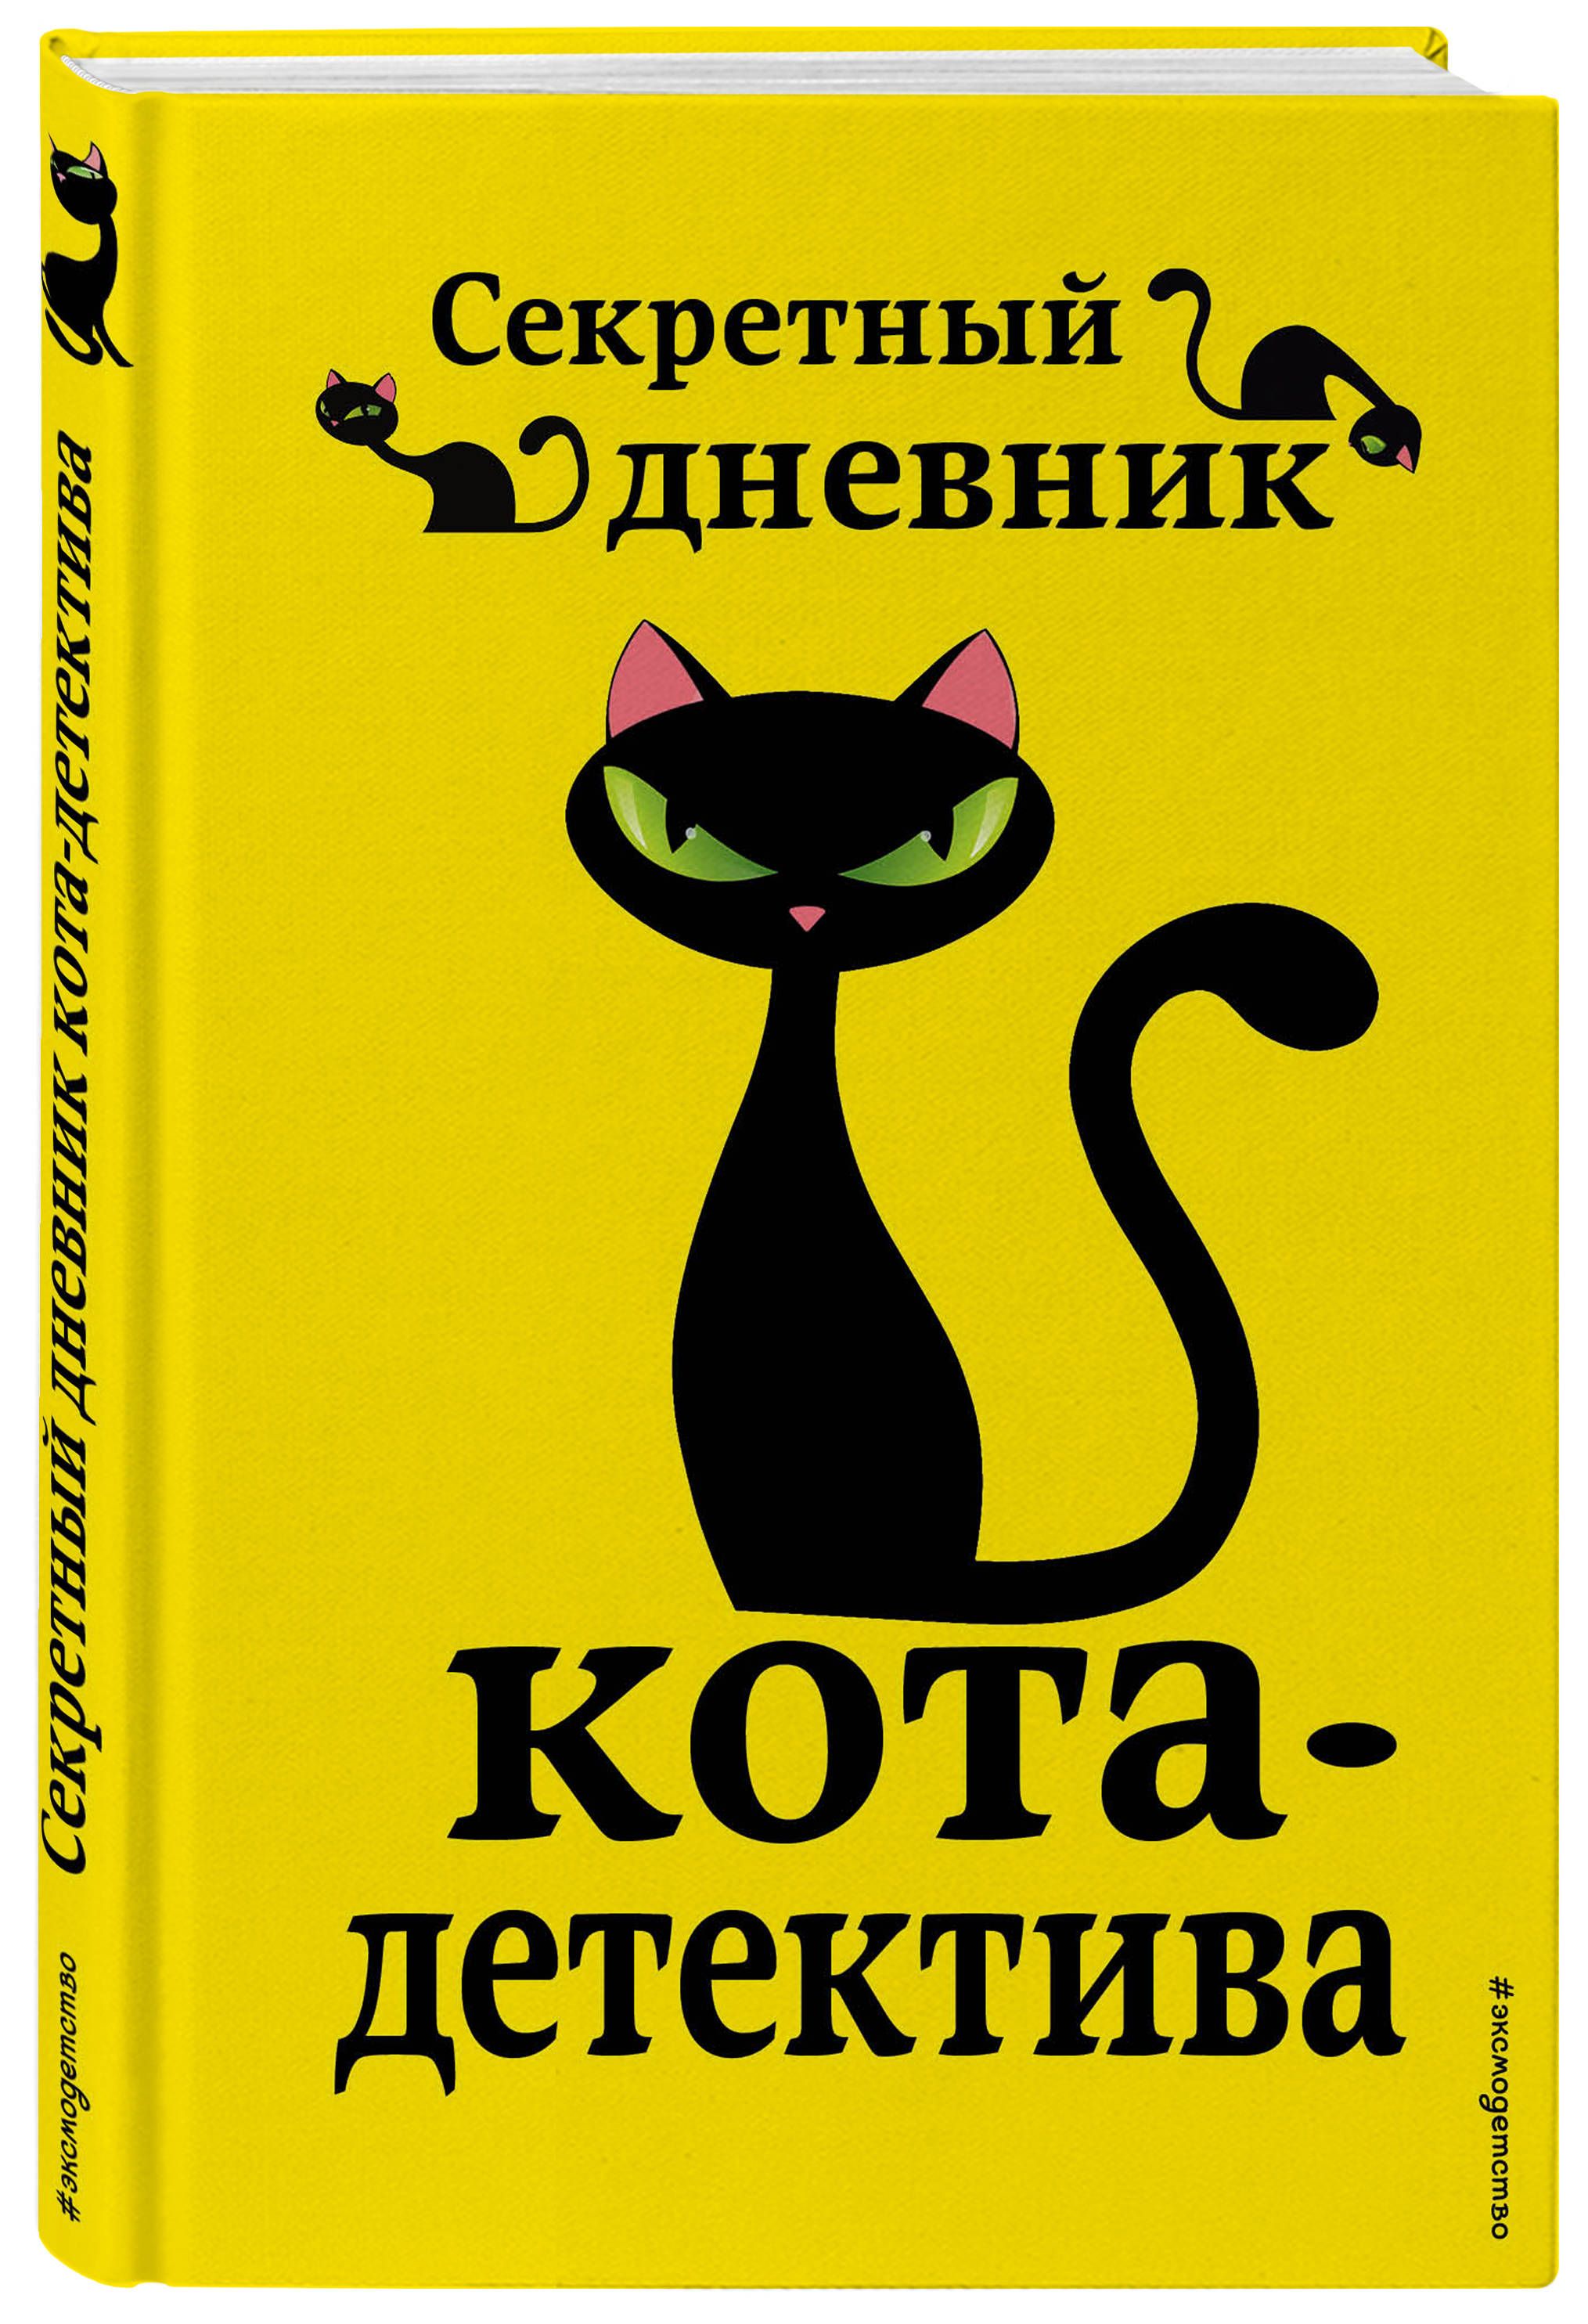 Секретный дневник кота-детектива от 1С Интерес